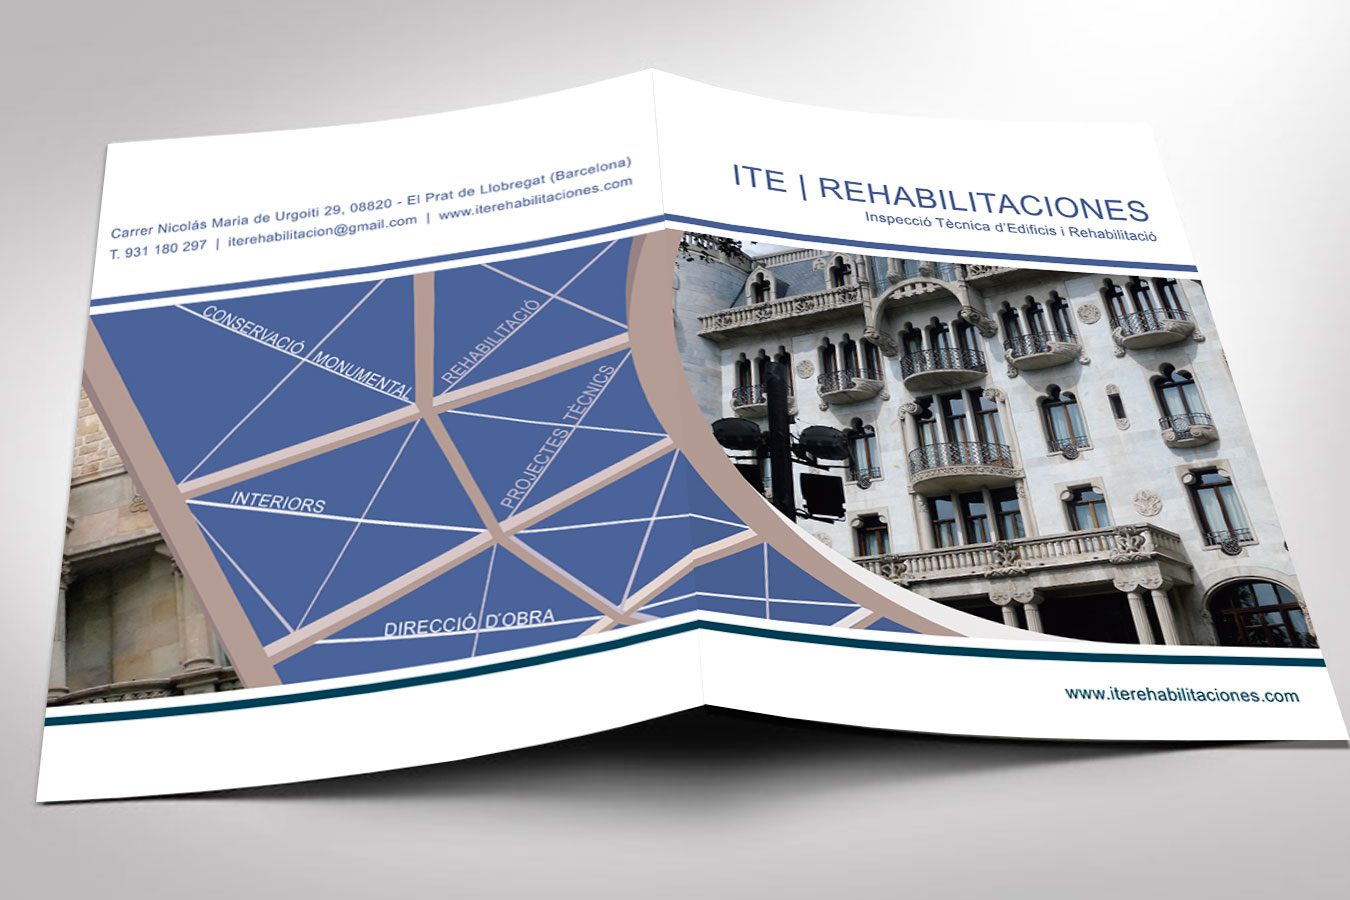 Diseño gráfico e Imprenta de TRÍPTICO Corporativo triple dinA4 para ITE REHABILITACIONES (El Prat. Barcelona). Diseño: IDG GRUP WEB - Imagen Corporativa y Publicidad